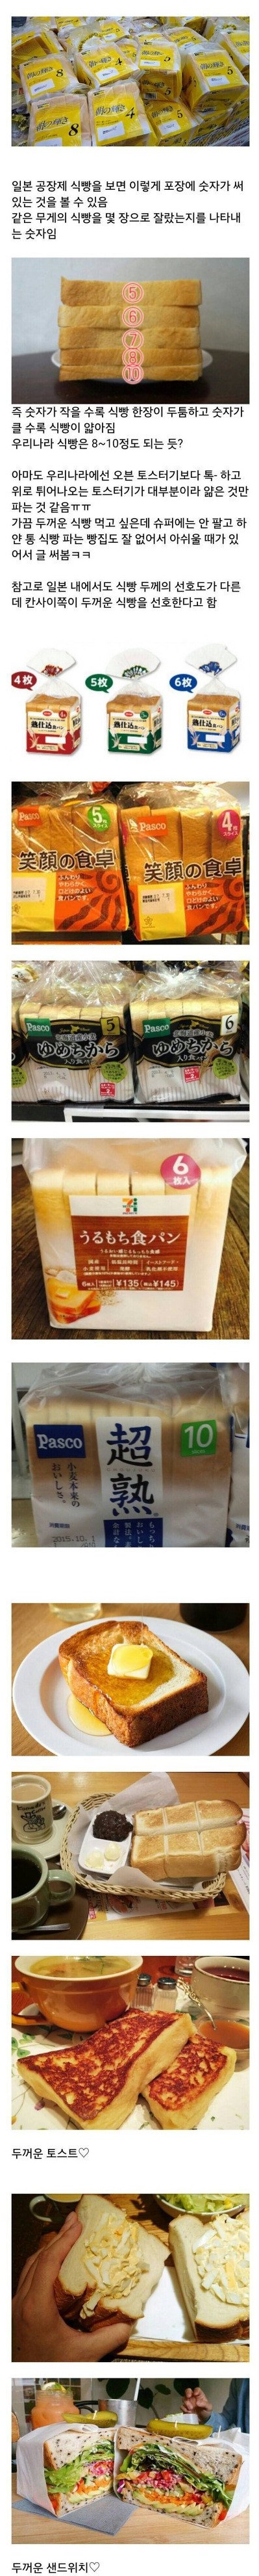 일본의 공장제 식빵 .jpg.jpg